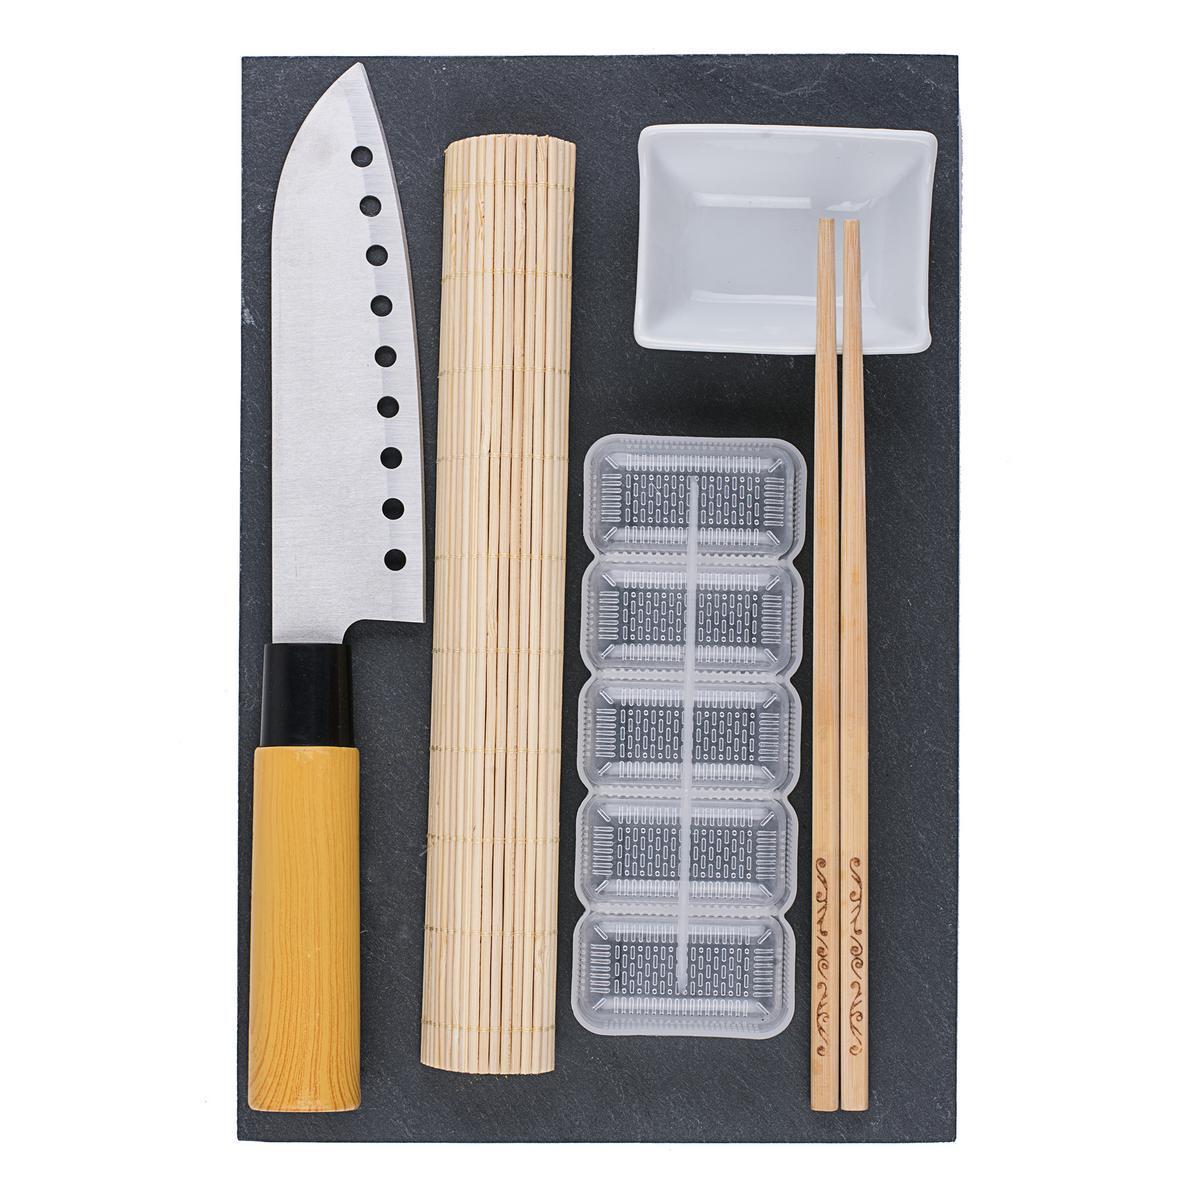 Kit à sushis - Différents accessoires - 30 x 20 x 4,5 cm - Blanc et marron